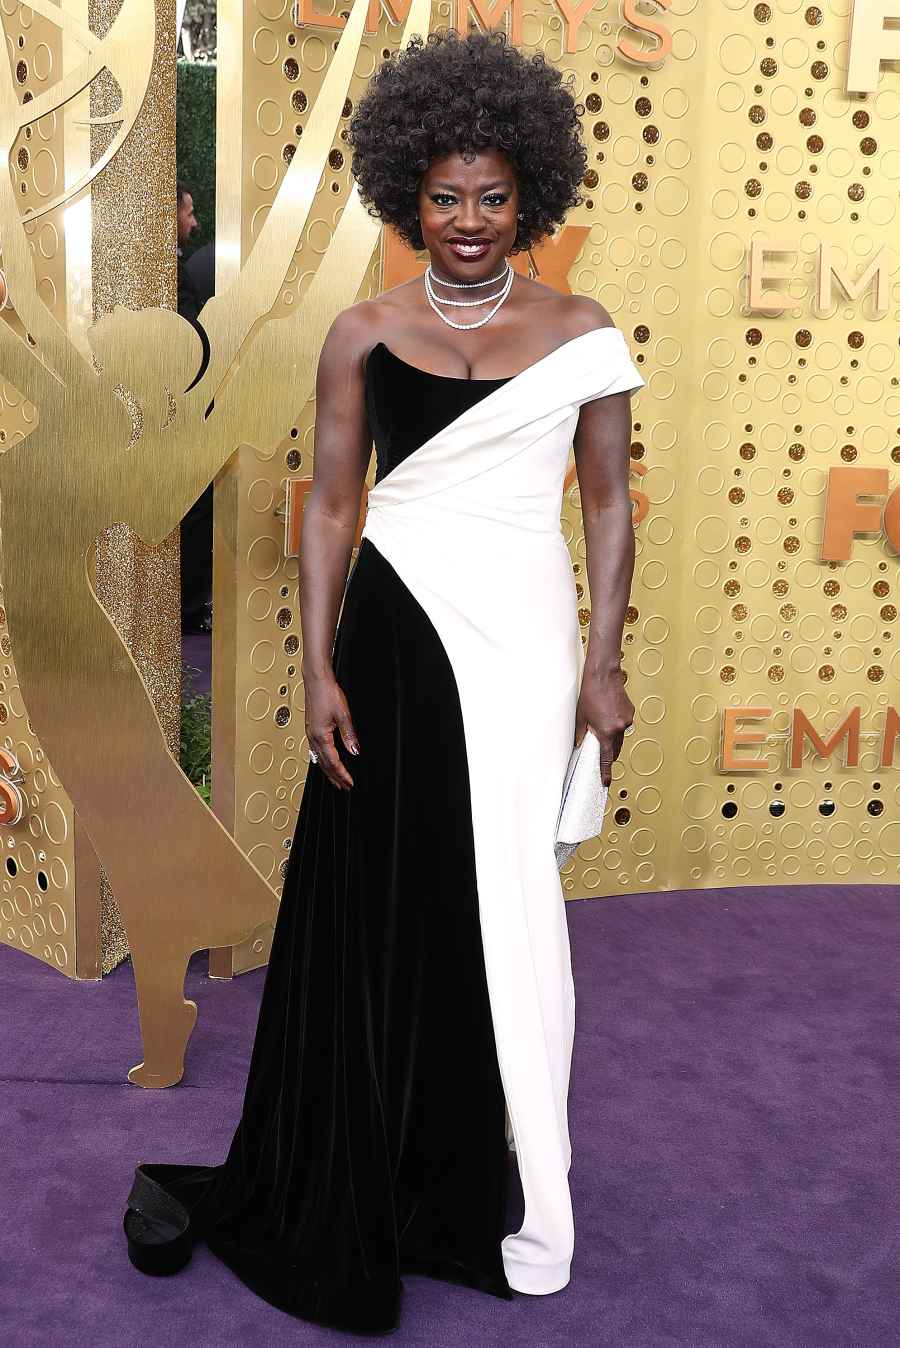 Emmys 2019 - Viola Davis